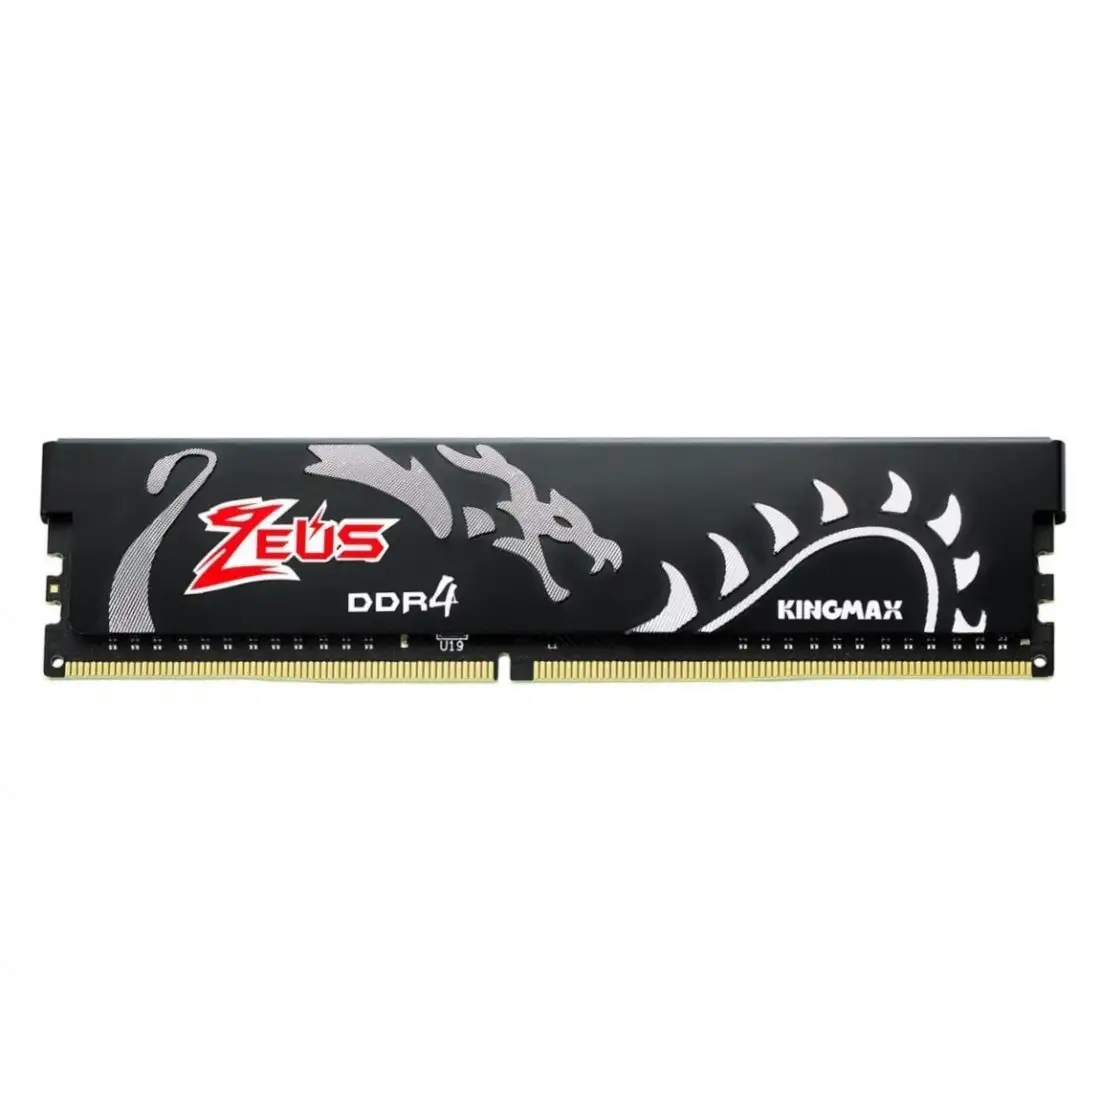 رم کامپیوتر Kingmax Zeus Dragon DDR4 16GB 3200MHz CL17 Single 11116608